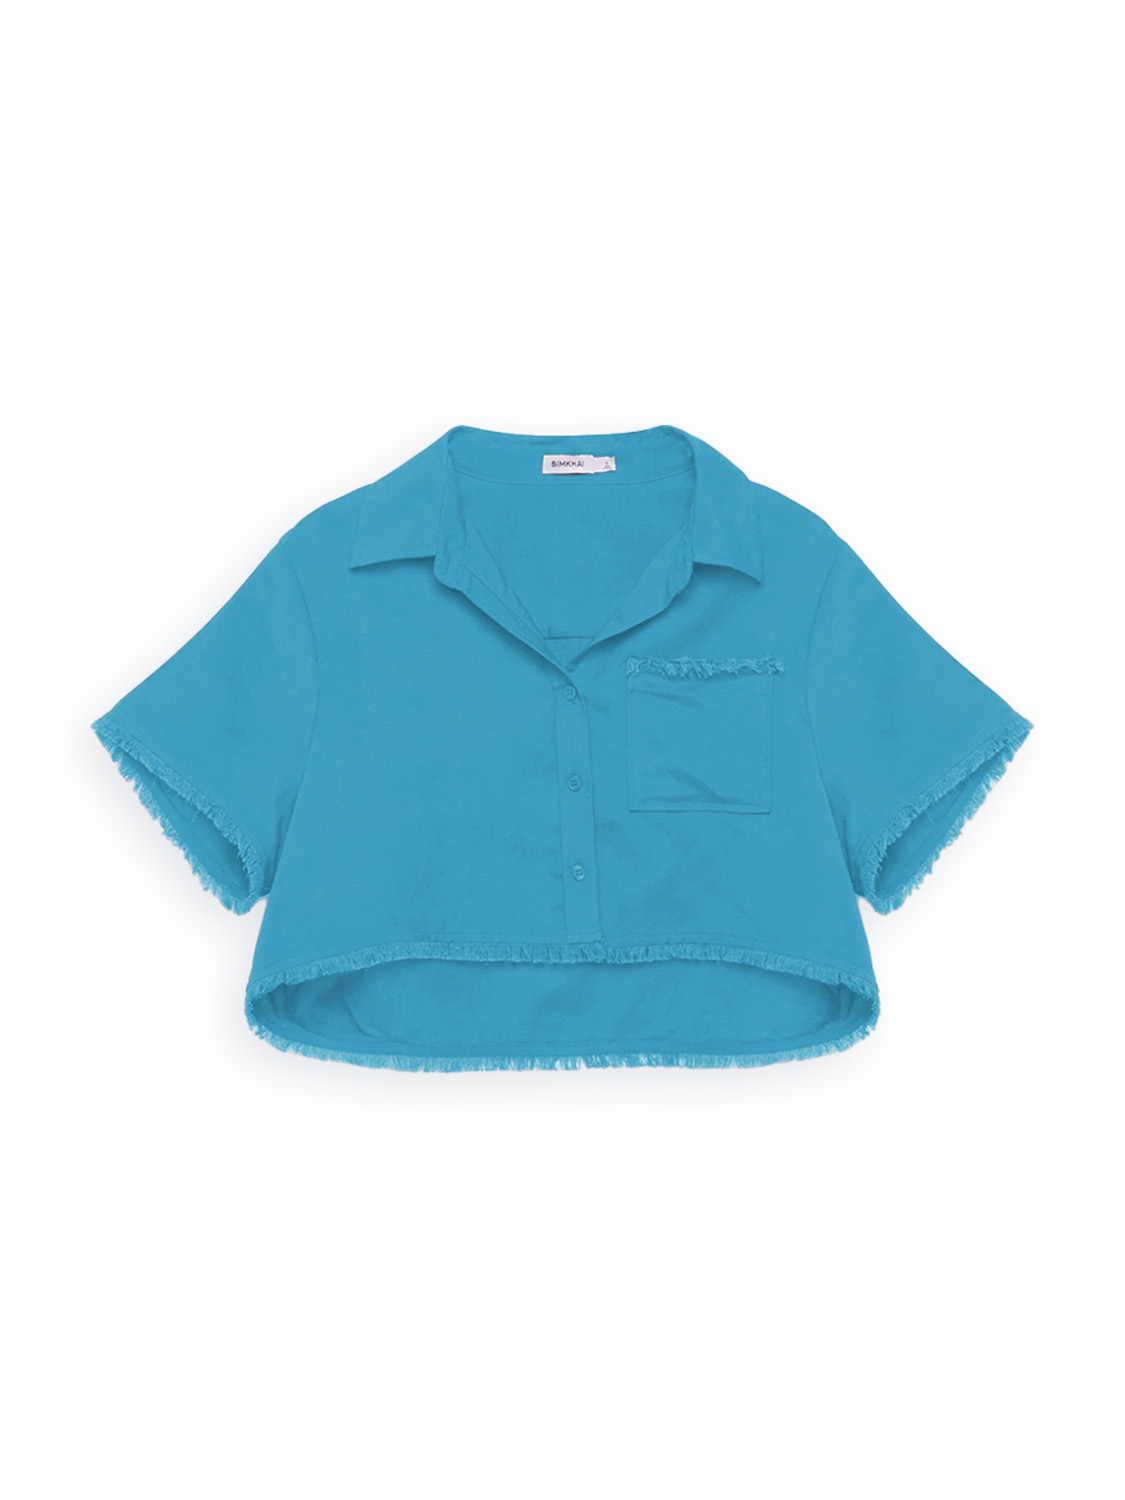 Simkhai Solange - beschnittenes Shirt blau S